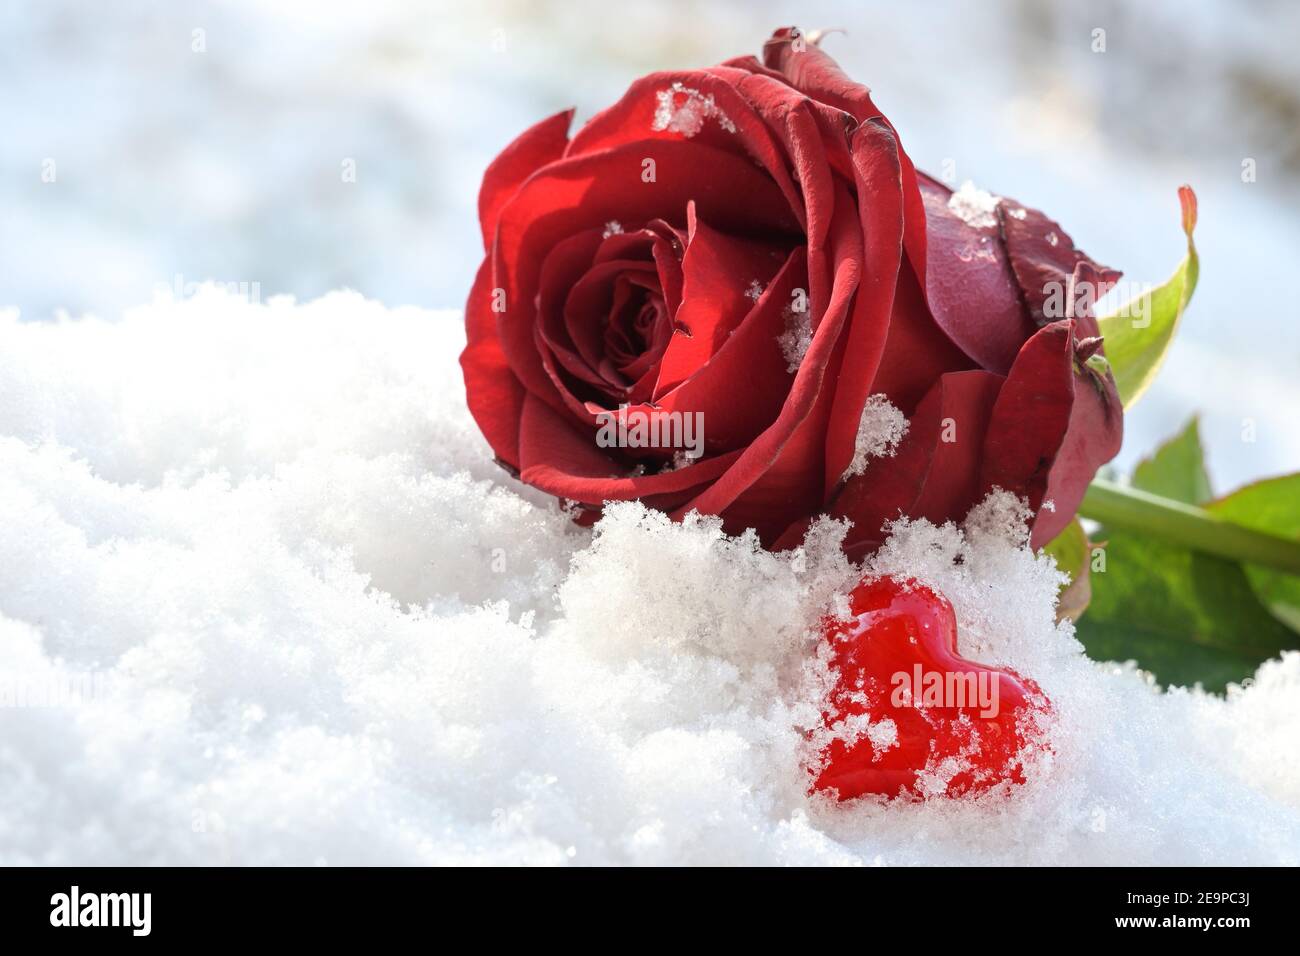 Coeur rouge de verre et une fleur de rose couché dans la neige blanche, symbole d'amour le jour de la Saint Valentin, espace de copie, mise au point sélectionnée, profondeur de champ étroite Banque D'Images